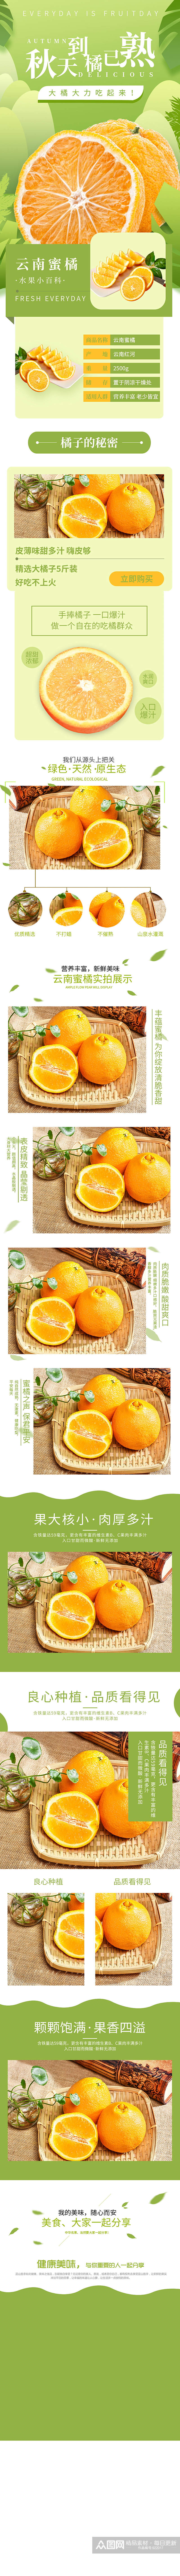 淘宝水果生鲜橘子桔子柑橘详情页素材